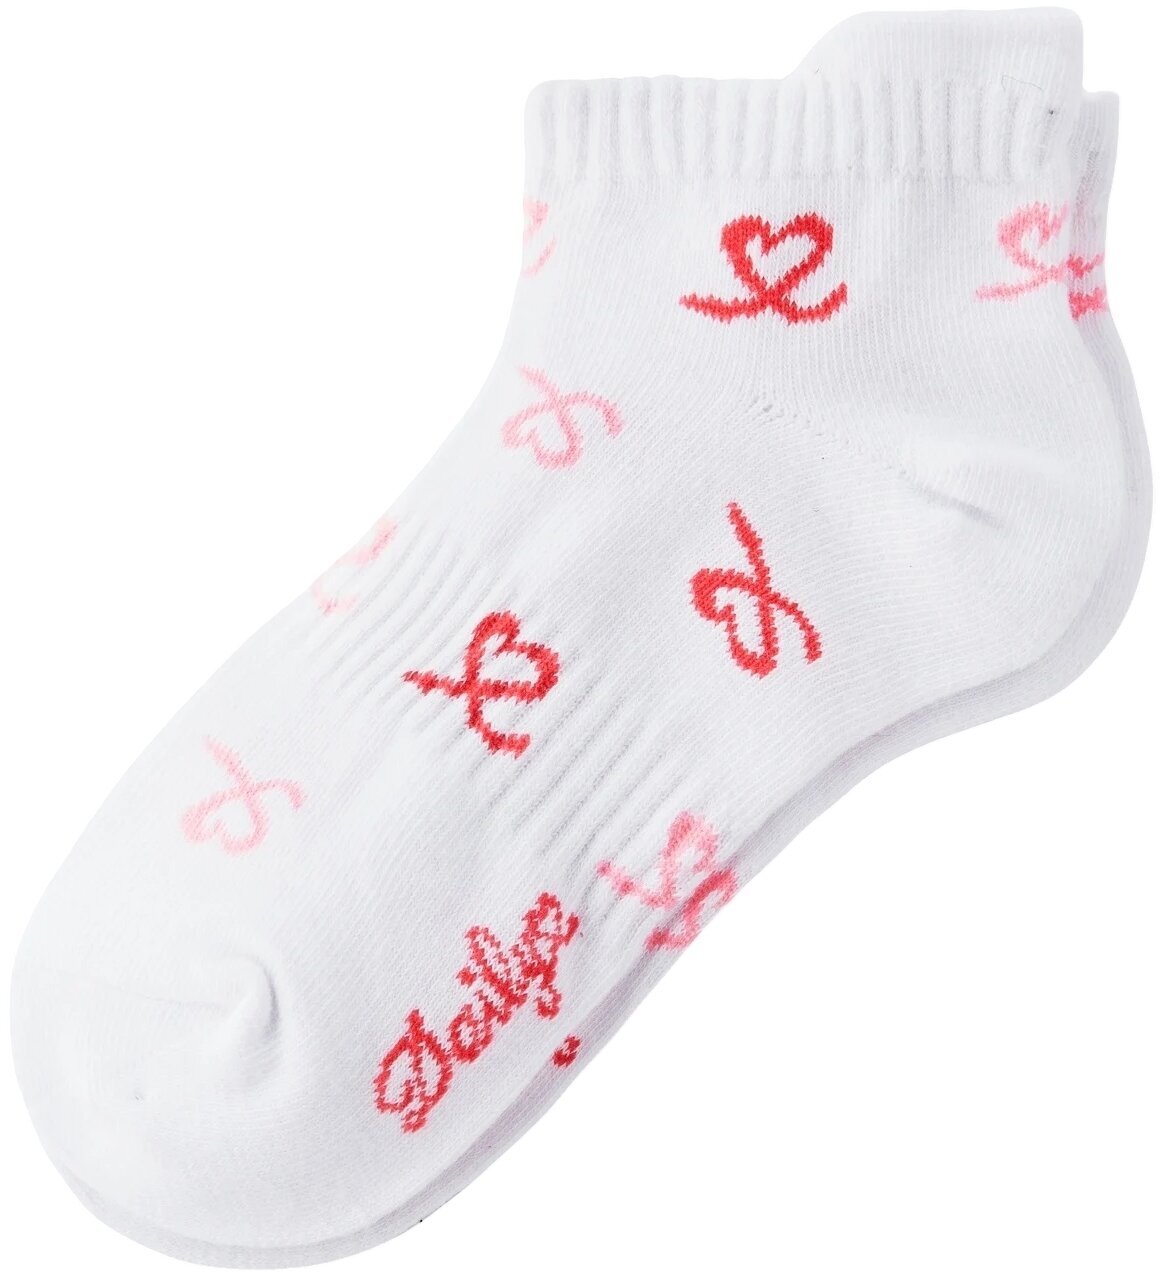 Socken Daily Sports Heart 3-Pack Socks Socken White 36-38